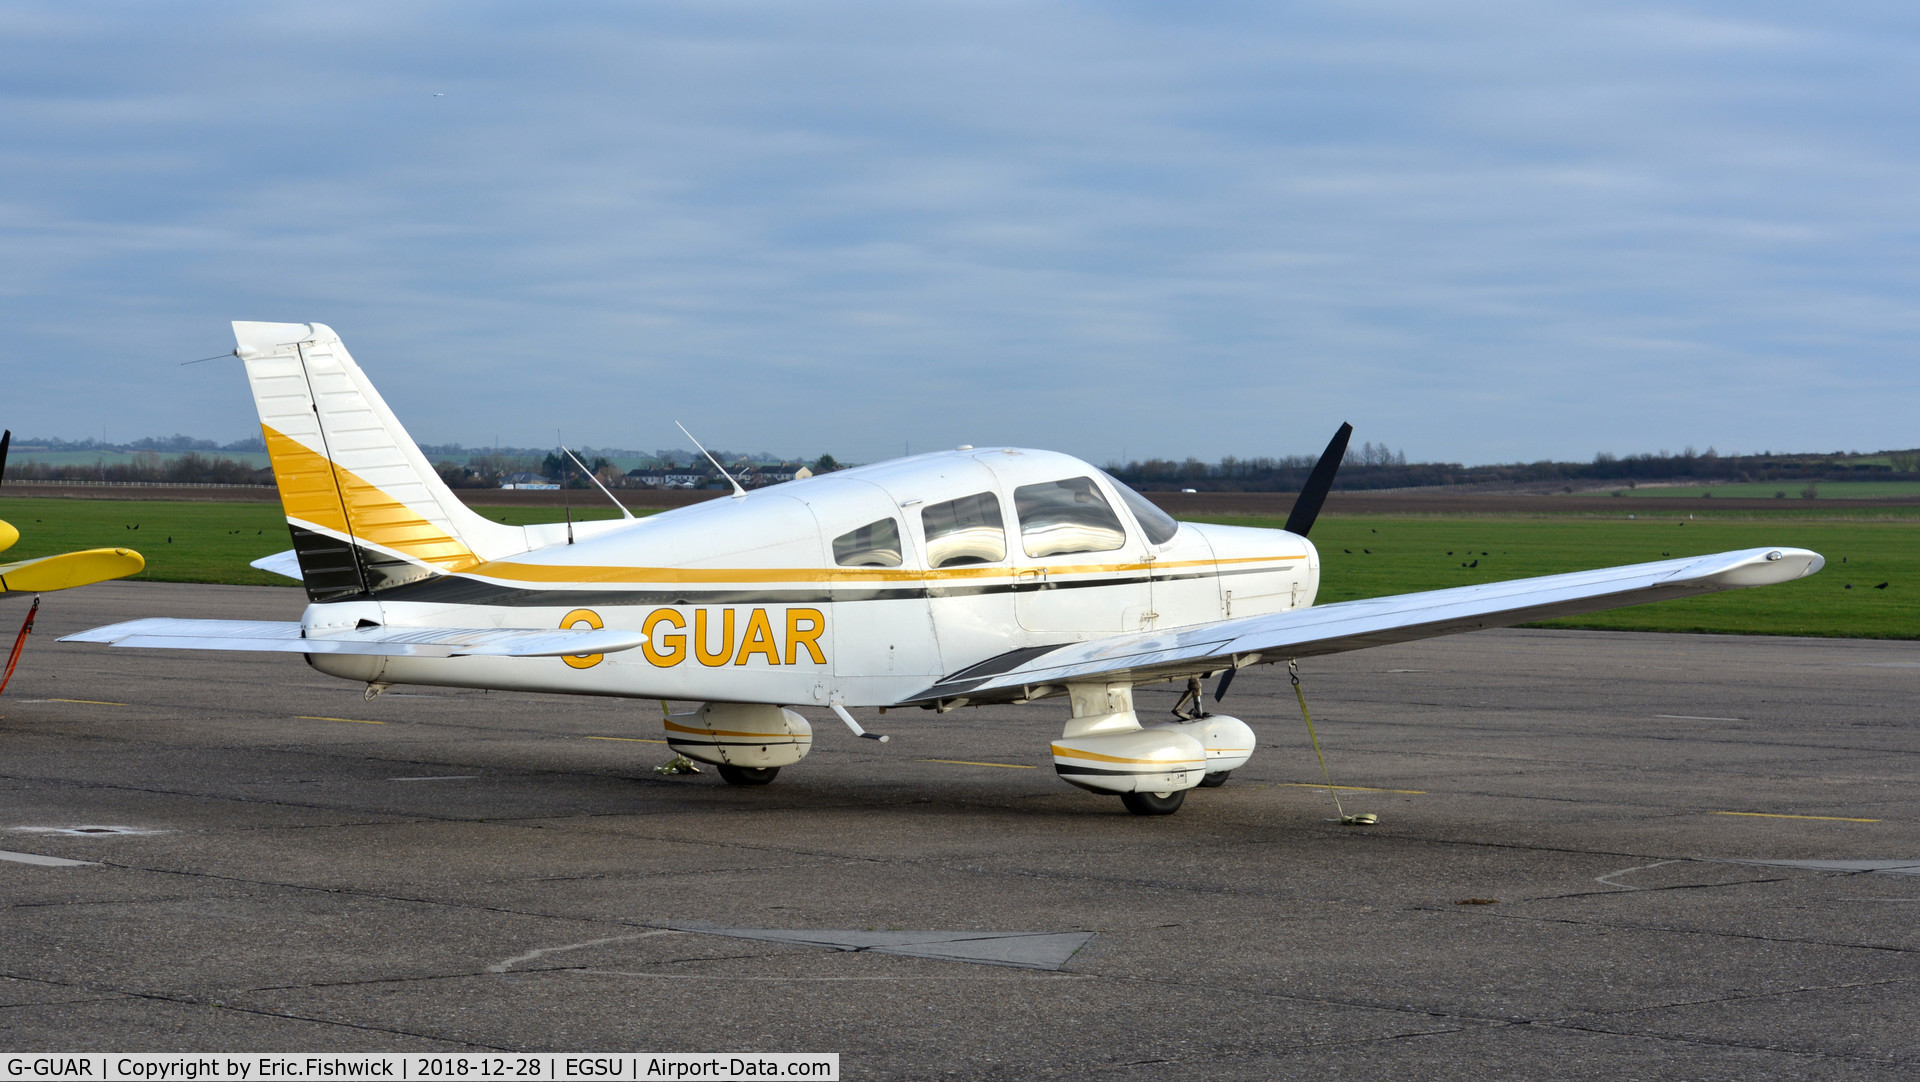 G-GUAR, 1978 Piper PA-28-161 Warrior II C/N 28-7816576, 2. G-GUAR visiting Duxford, Dec. 2018.